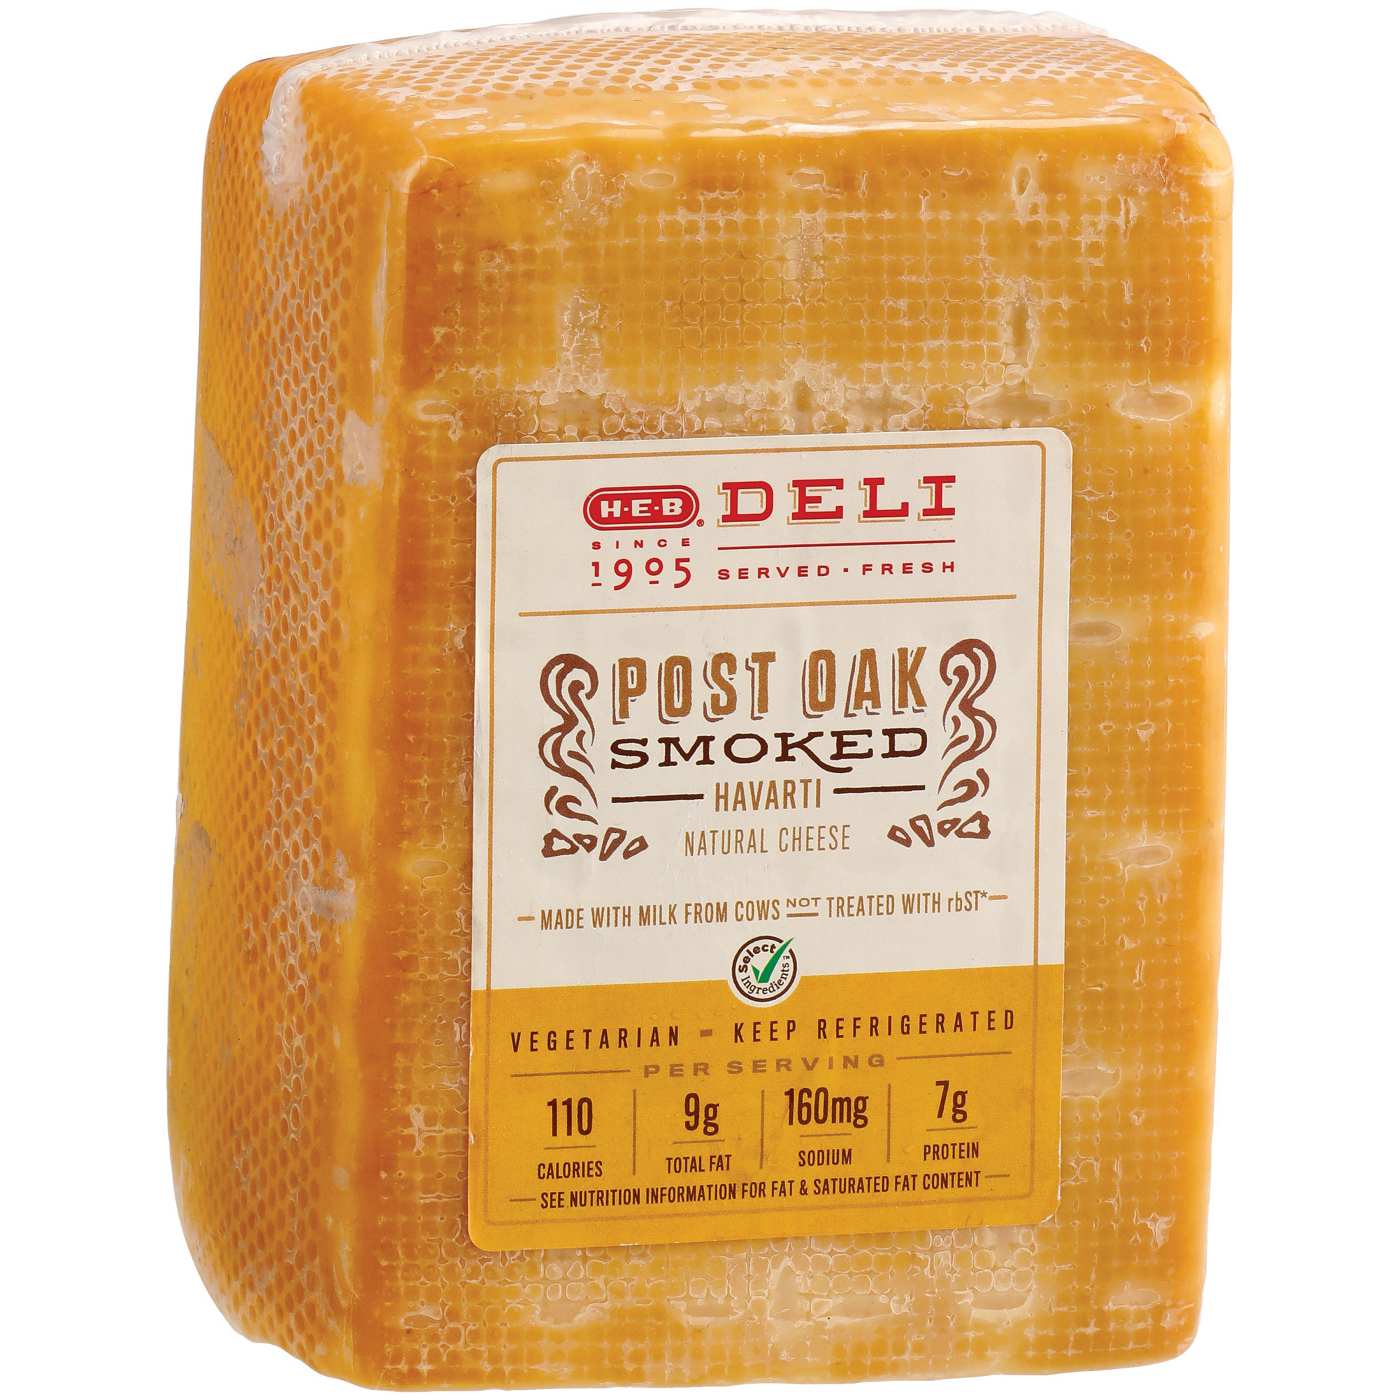 H-E-B Deli Sliced Post Oak Smoked Havarti Cheese; image 2 of 2